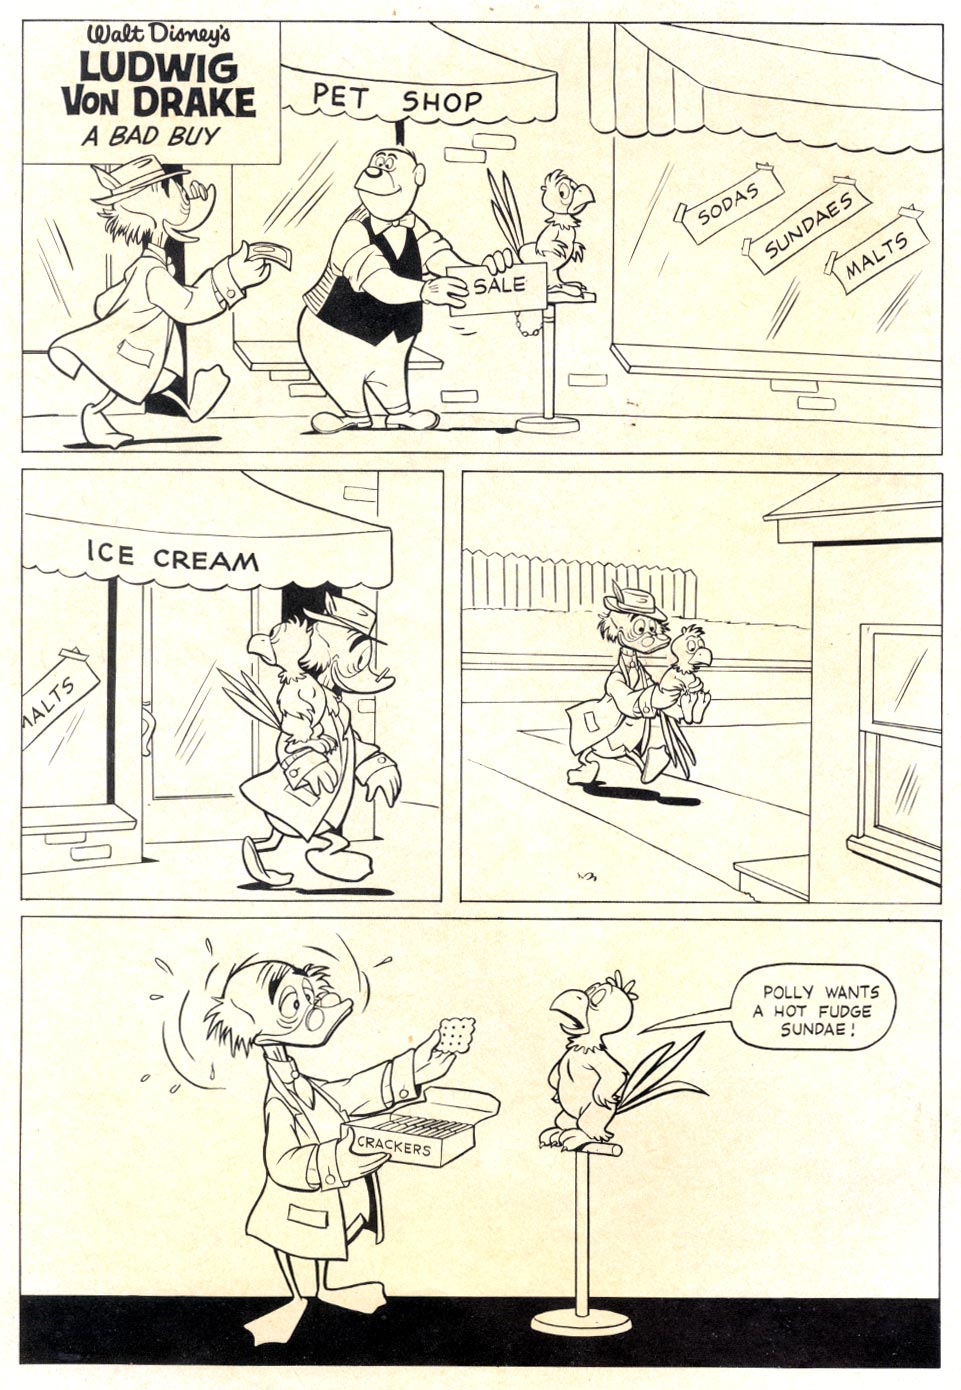 Read online Walt Disney's Ludwig Von Drake comic -  Issue #3 - 2